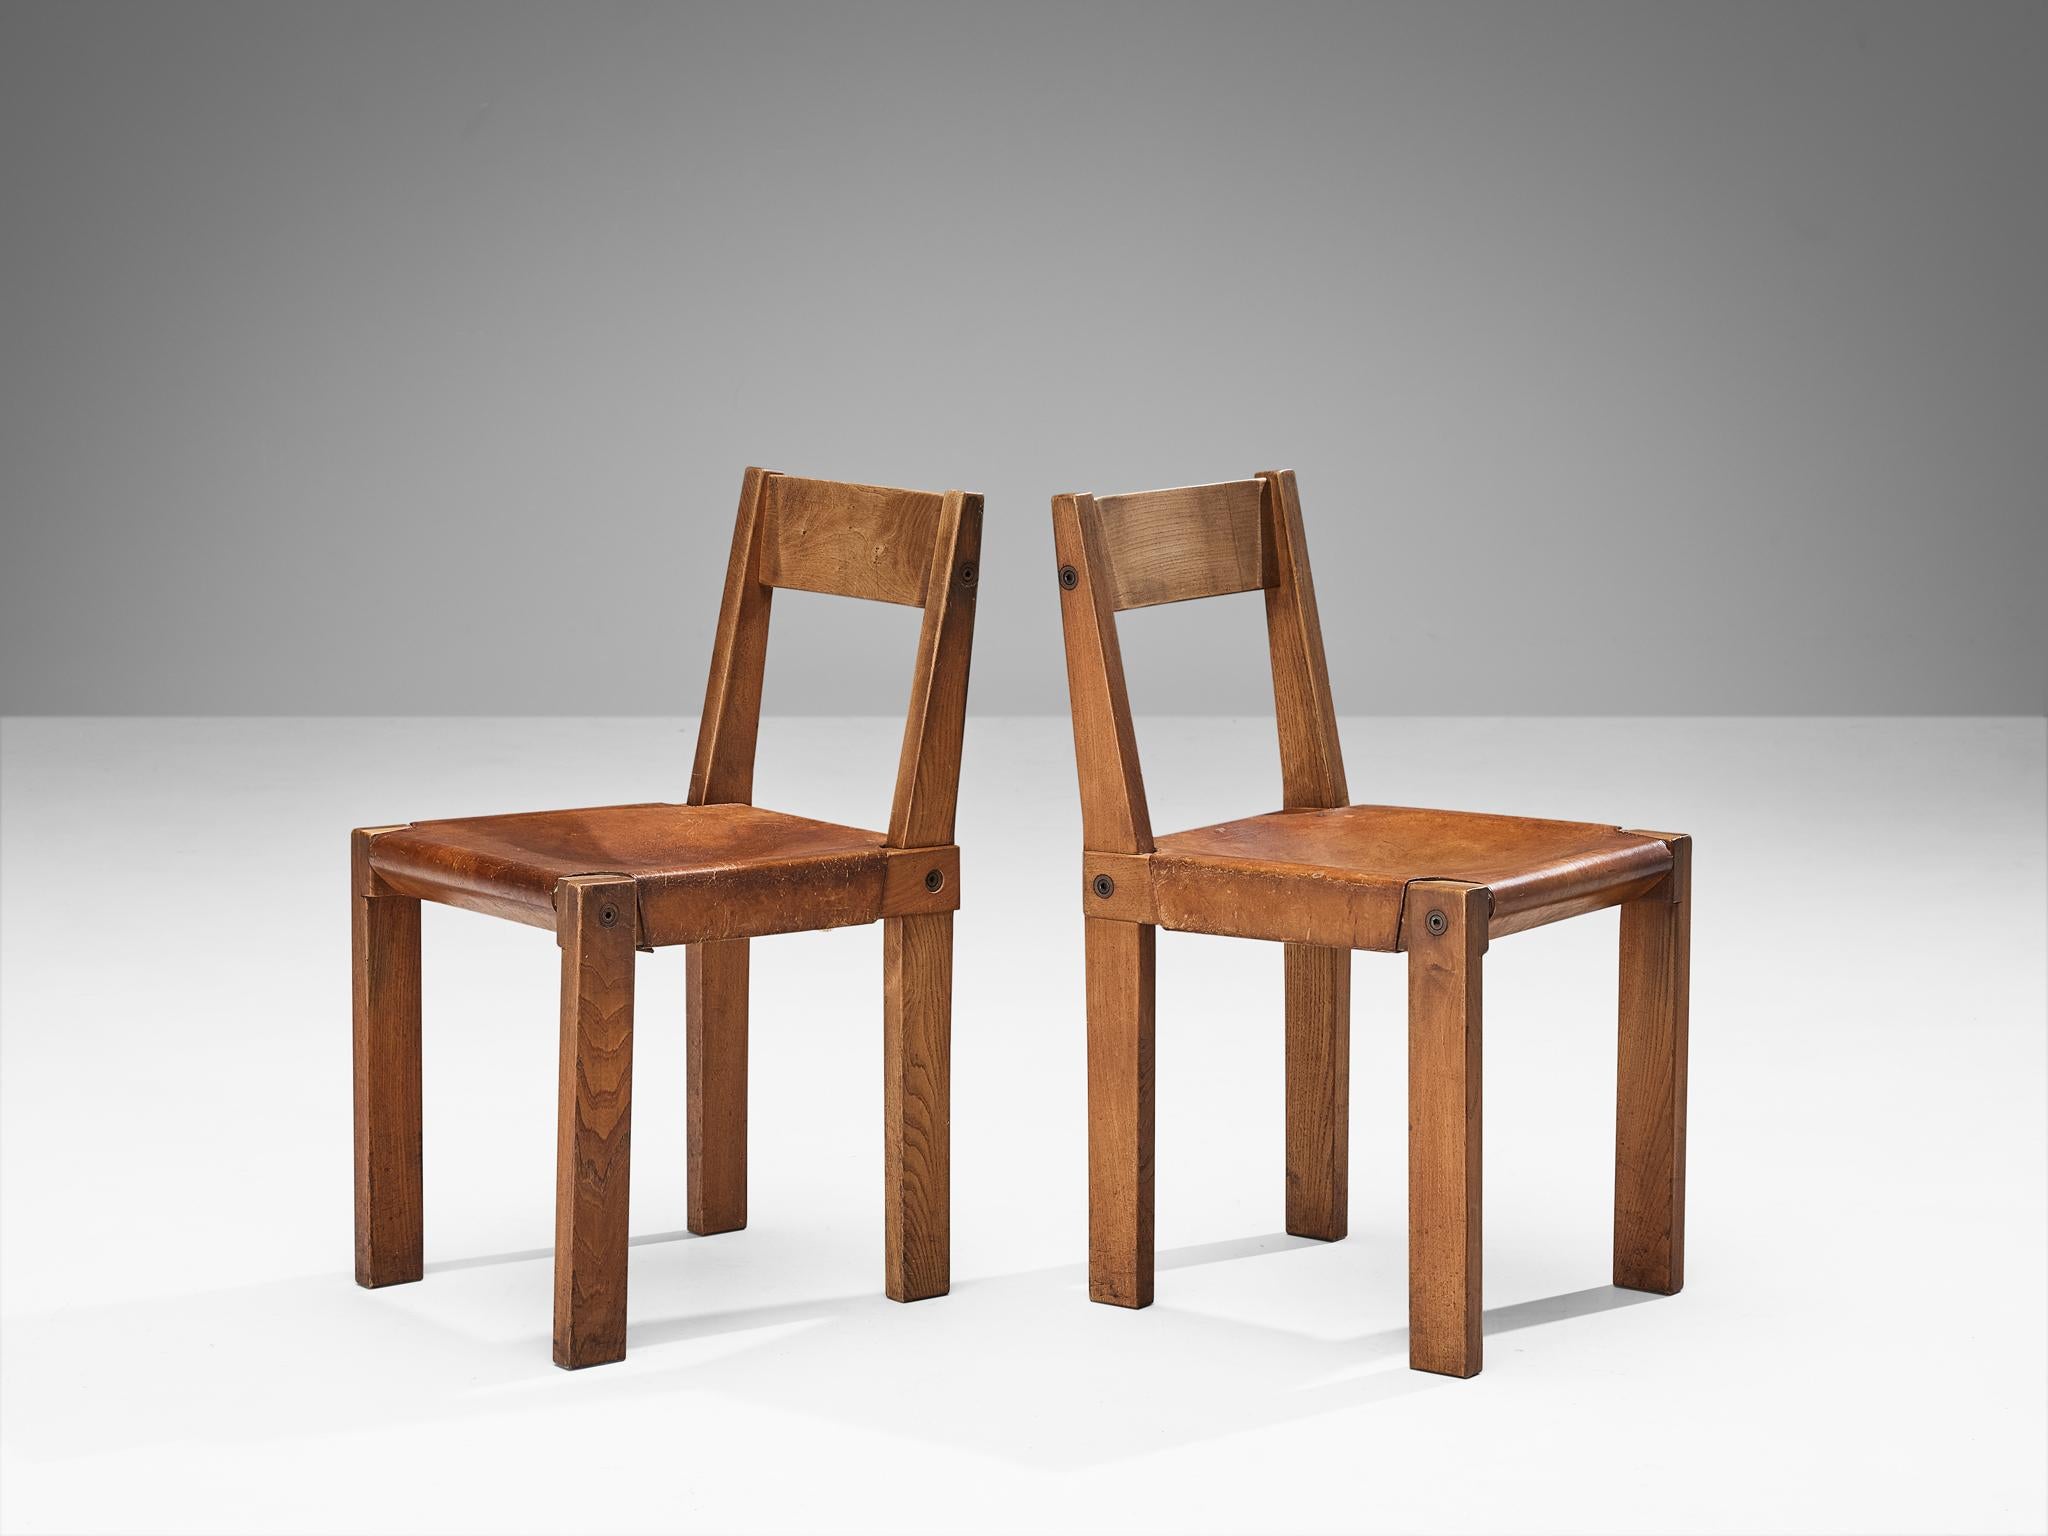 Pierre Corde, chaises de salle à manger, modèle 'S24', orme, cuir, corde, France, 1967

Ce modèle S24 est une première édition créée par Pierre Chapo. Fabriquées en bois d'orme massif, les chaises présentent un design cubique raffiné, à la fois